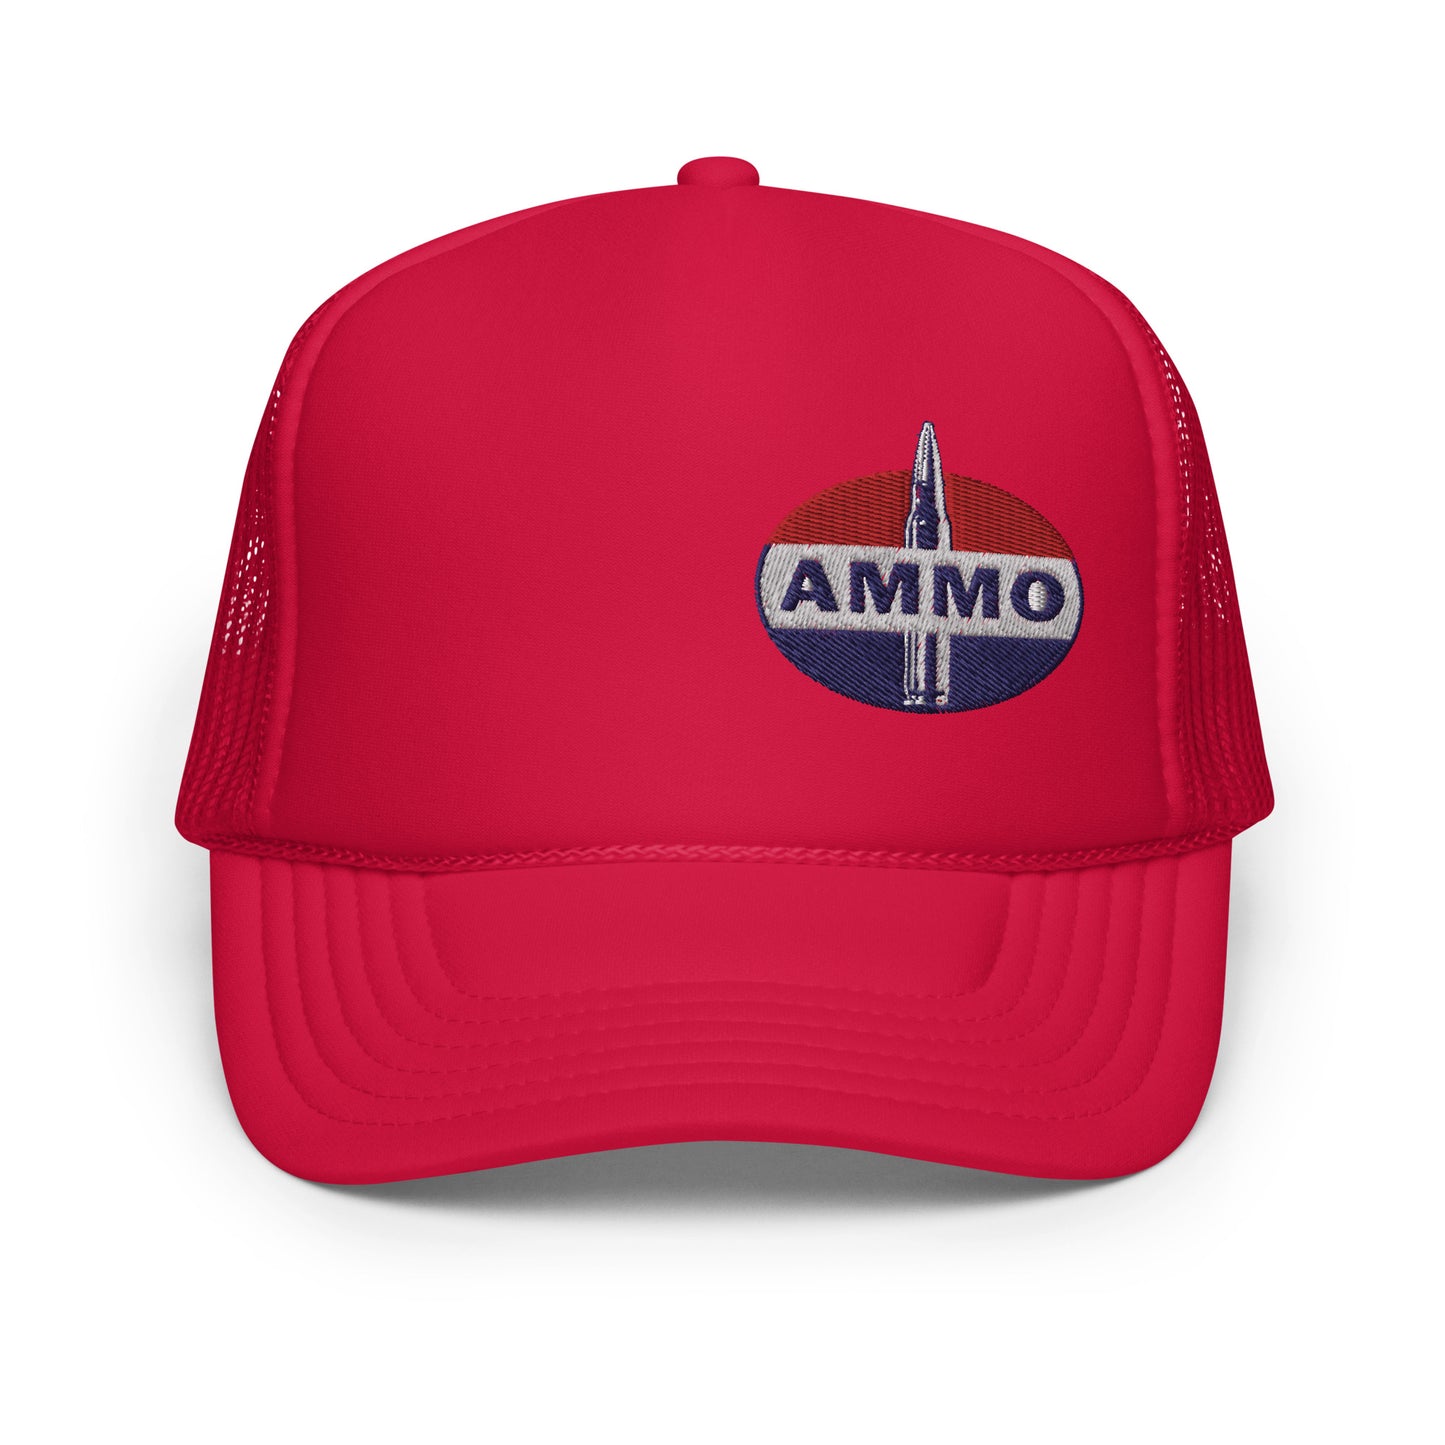 AMMO- Fuel Parody Foam trucker hat